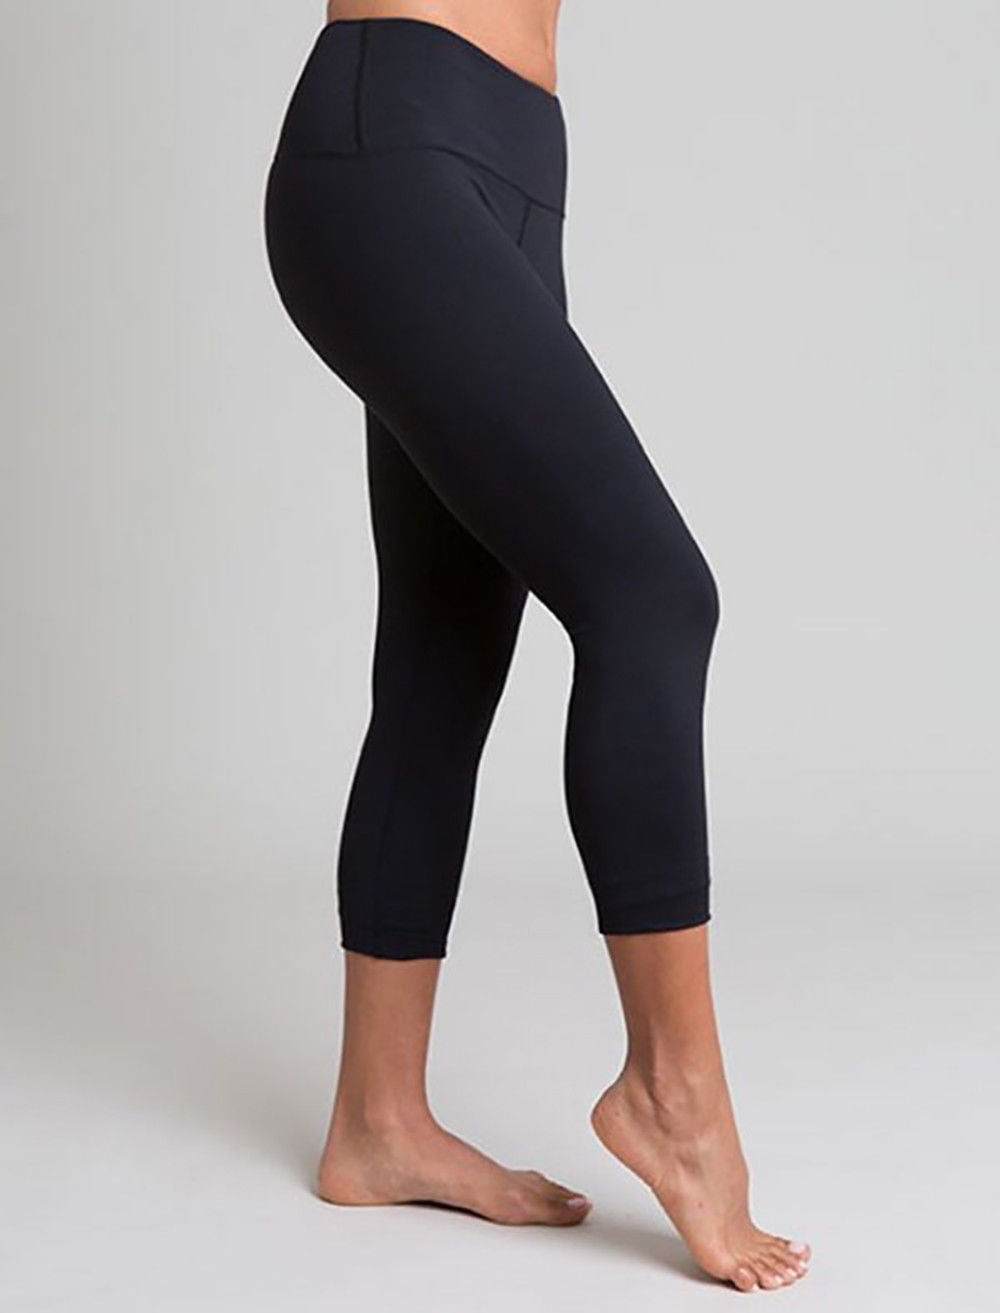 Black Three-Quarter Legging Yoga Pants - L 